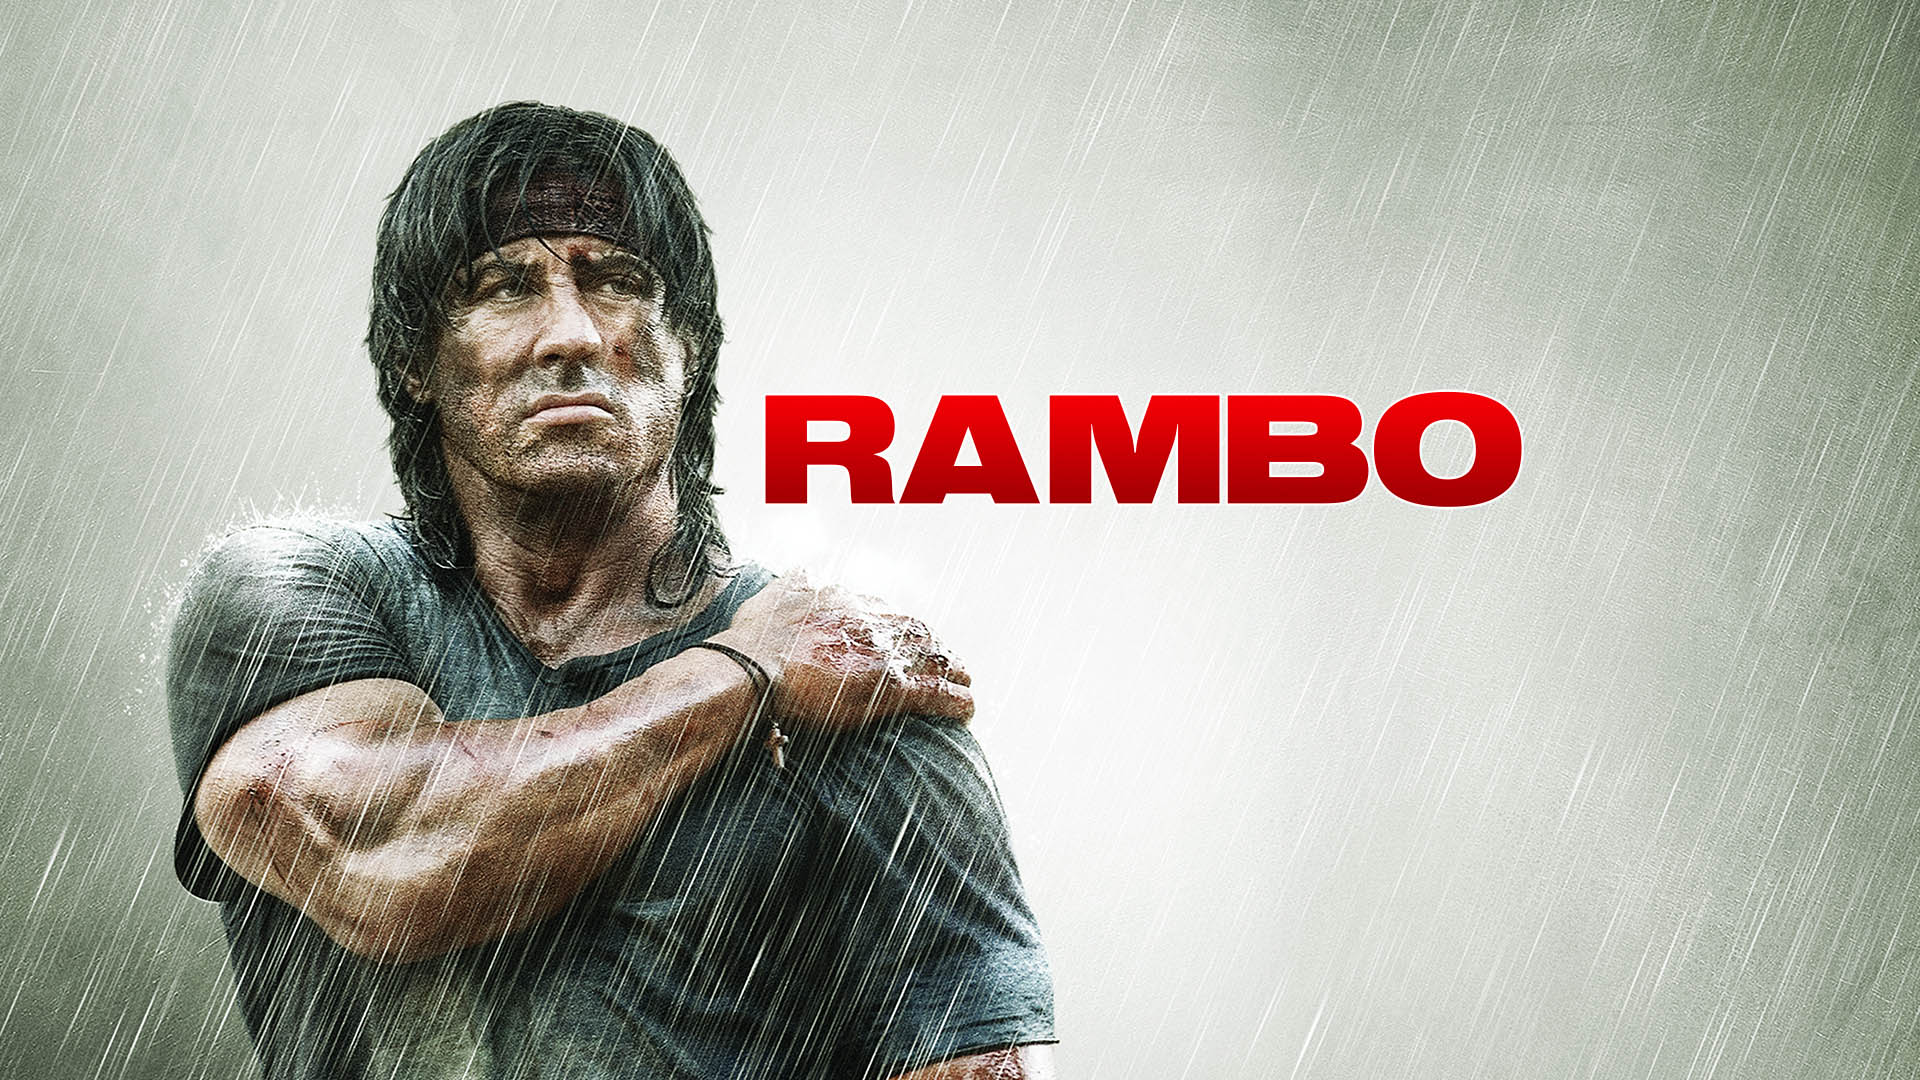 Watch Rambo Online | Stream Full Movies